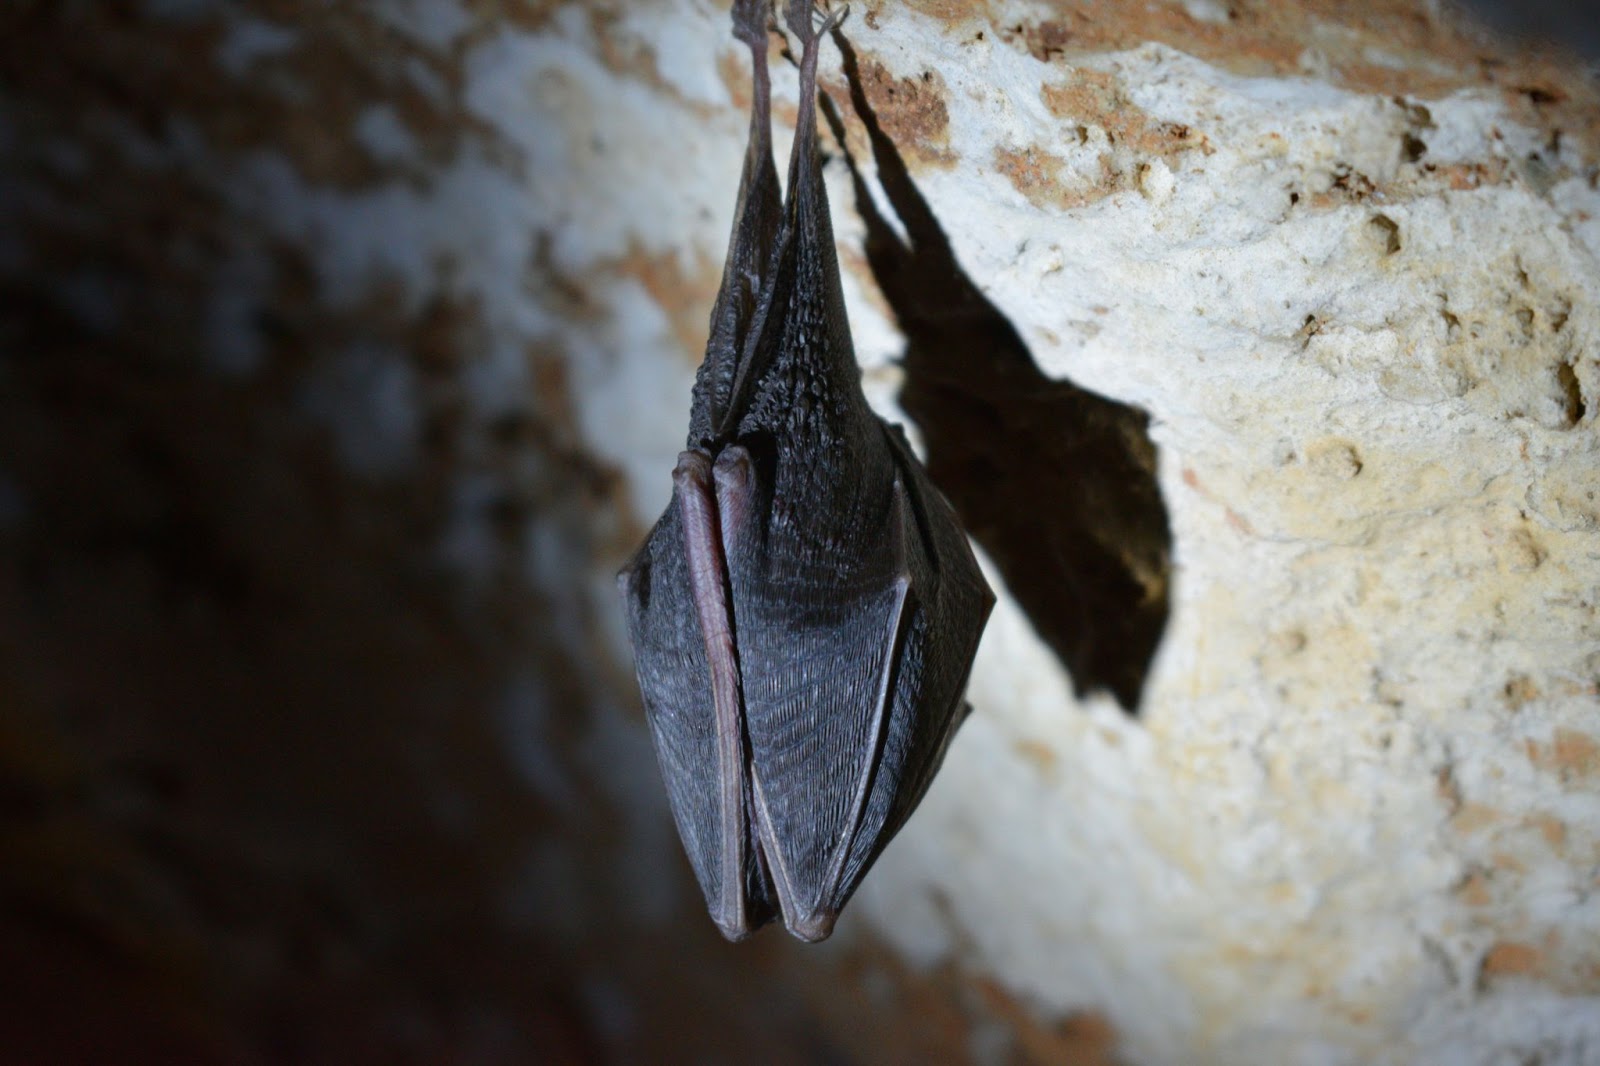 A bat in its natural habitat - the cave